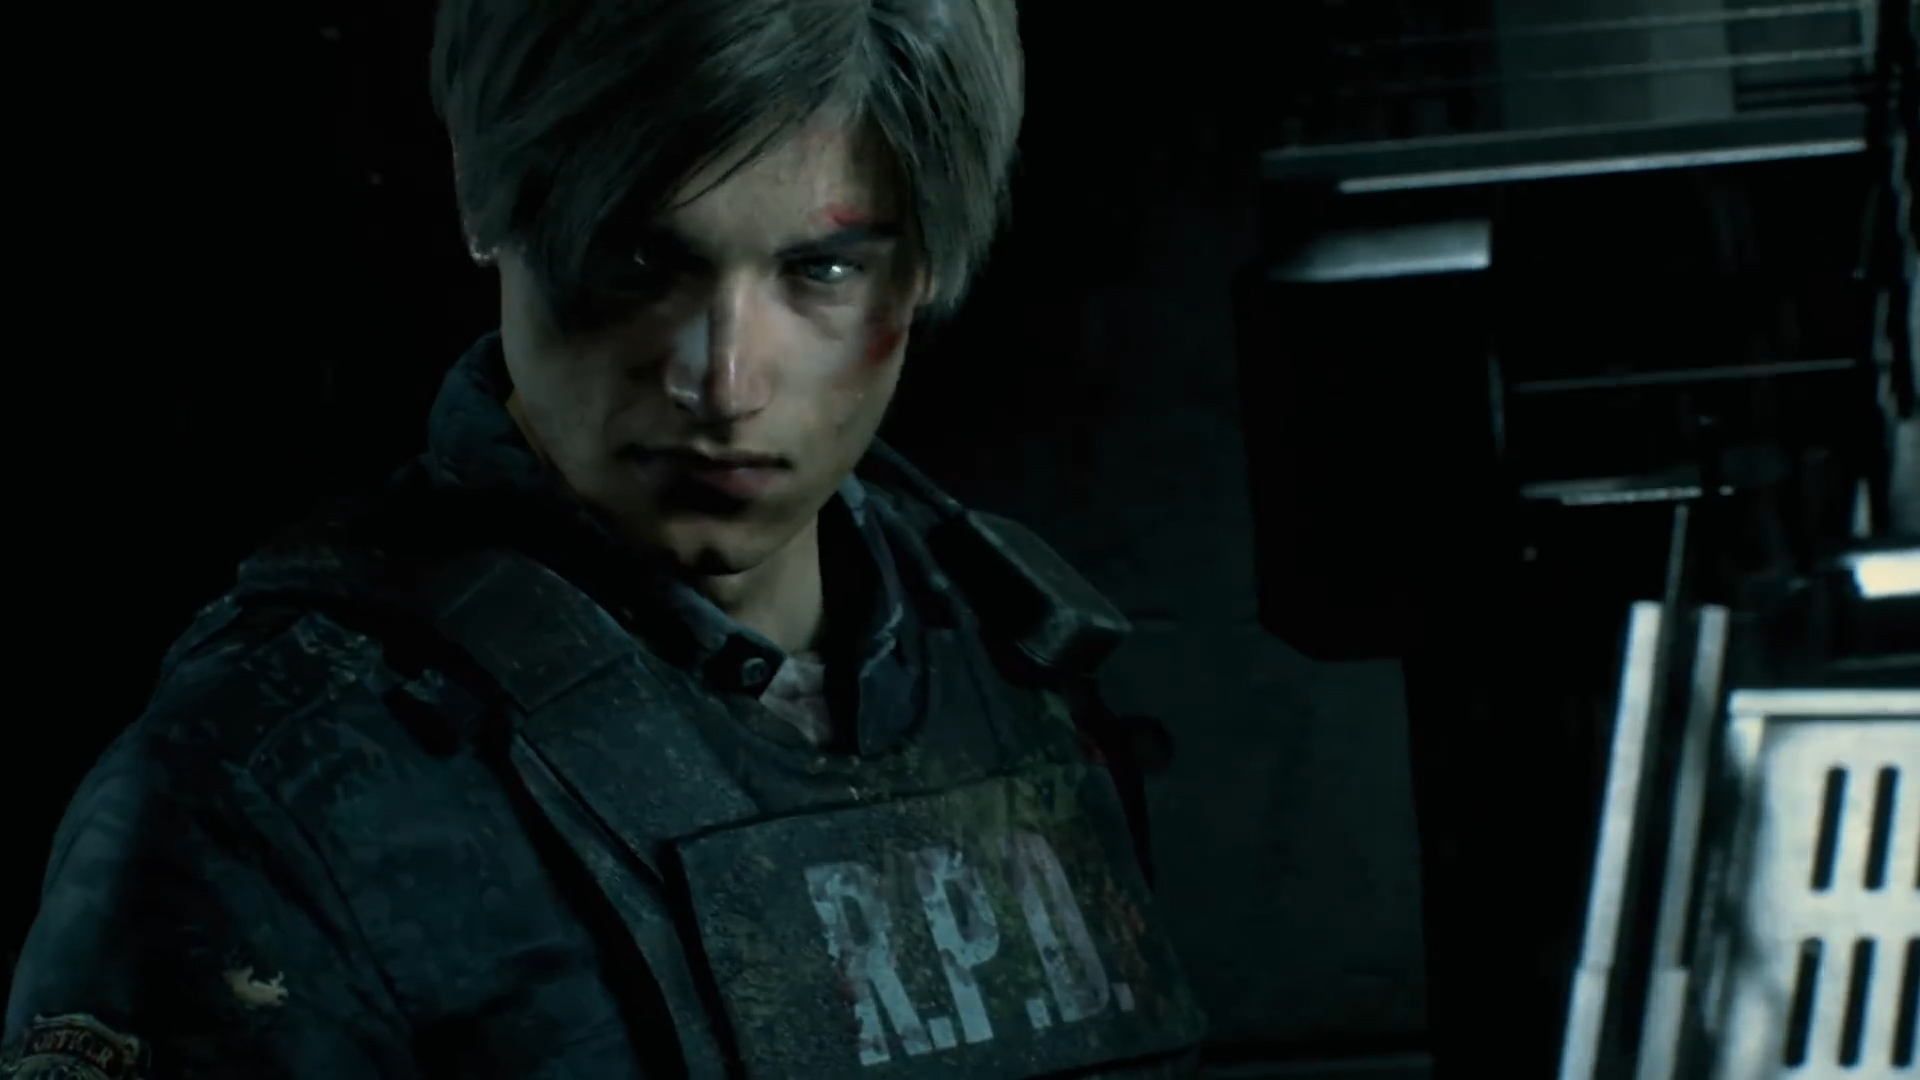 Resident Evil 2 é o melhor jogo do ano em ranking do Metacritic